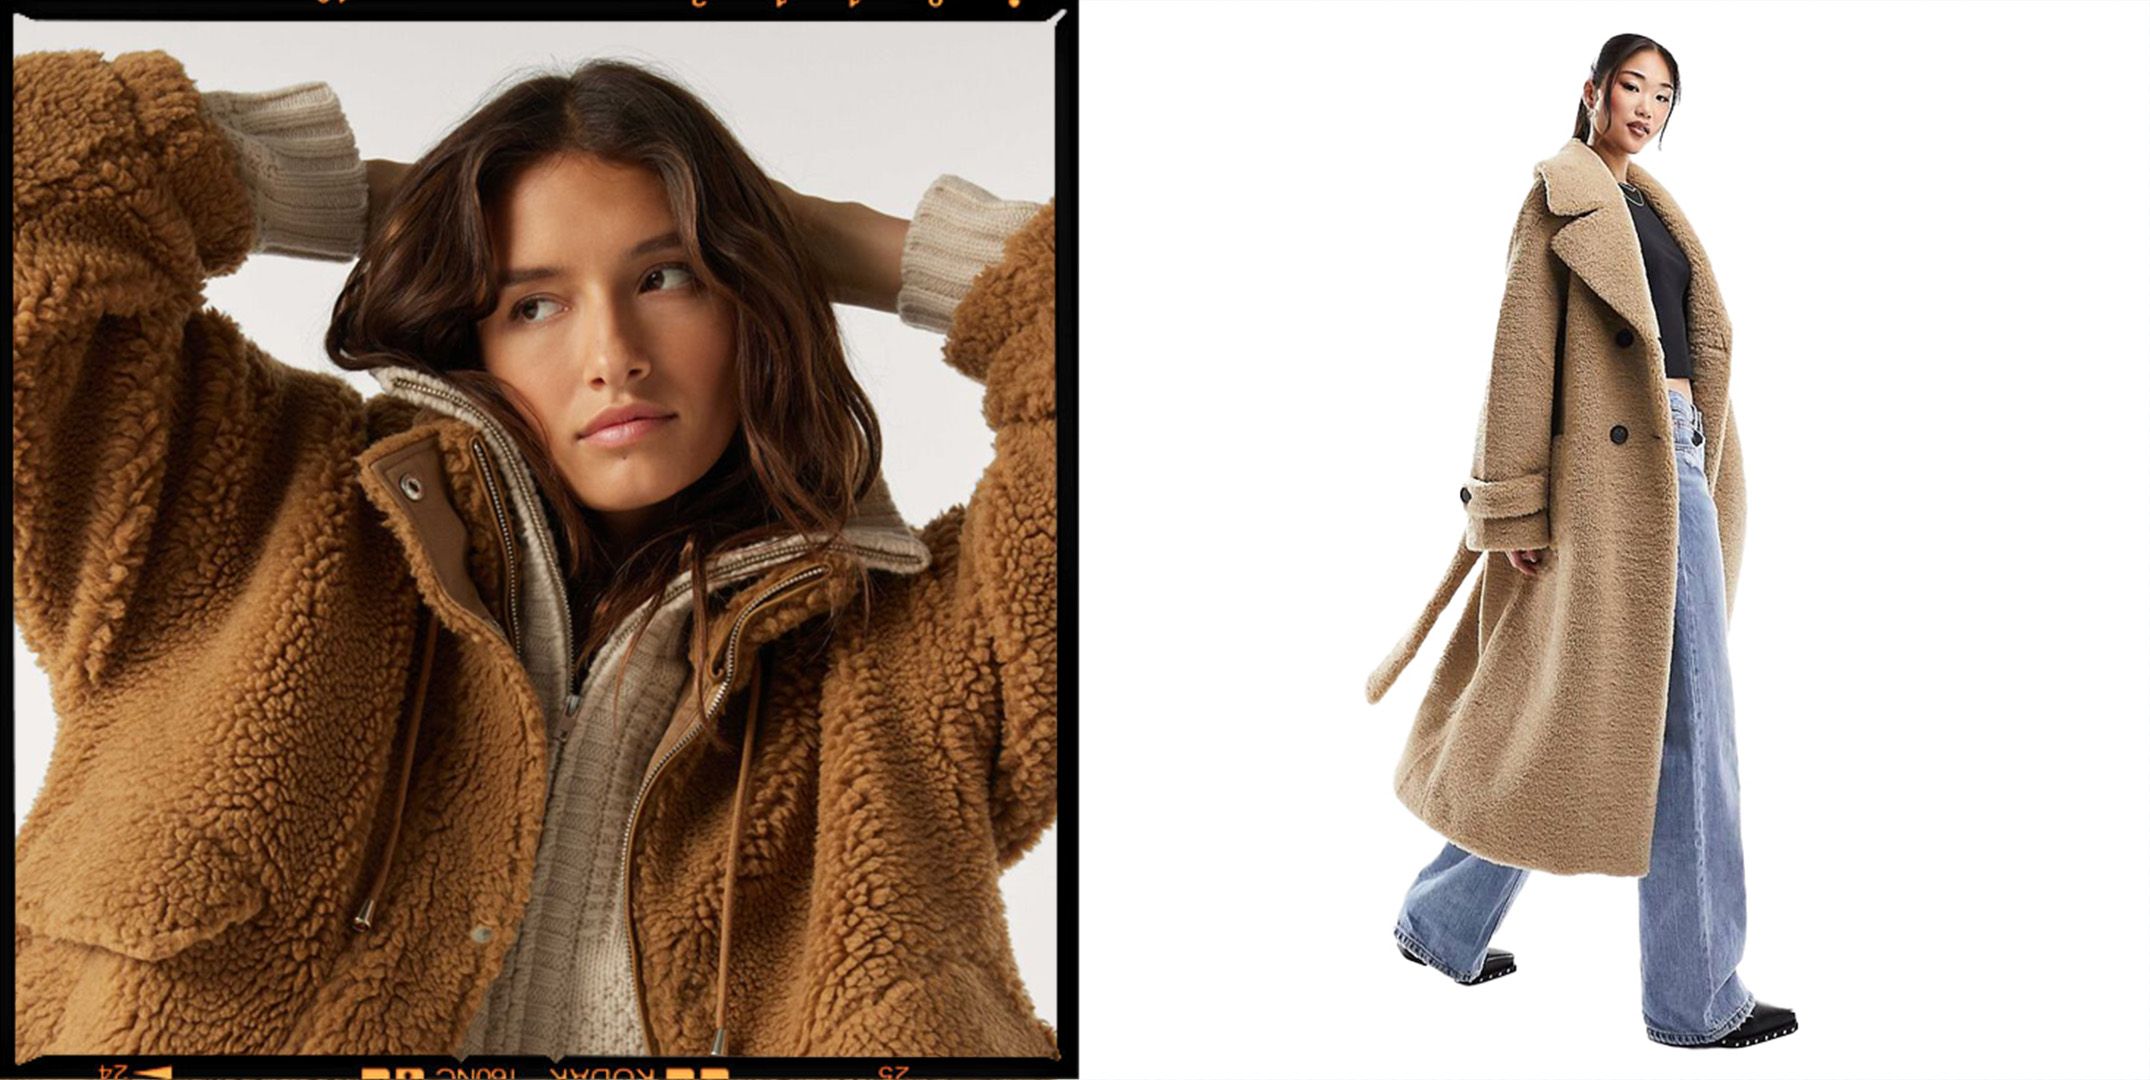 Women's winter teddy bear feel fur long coat super large luxury thick jacket